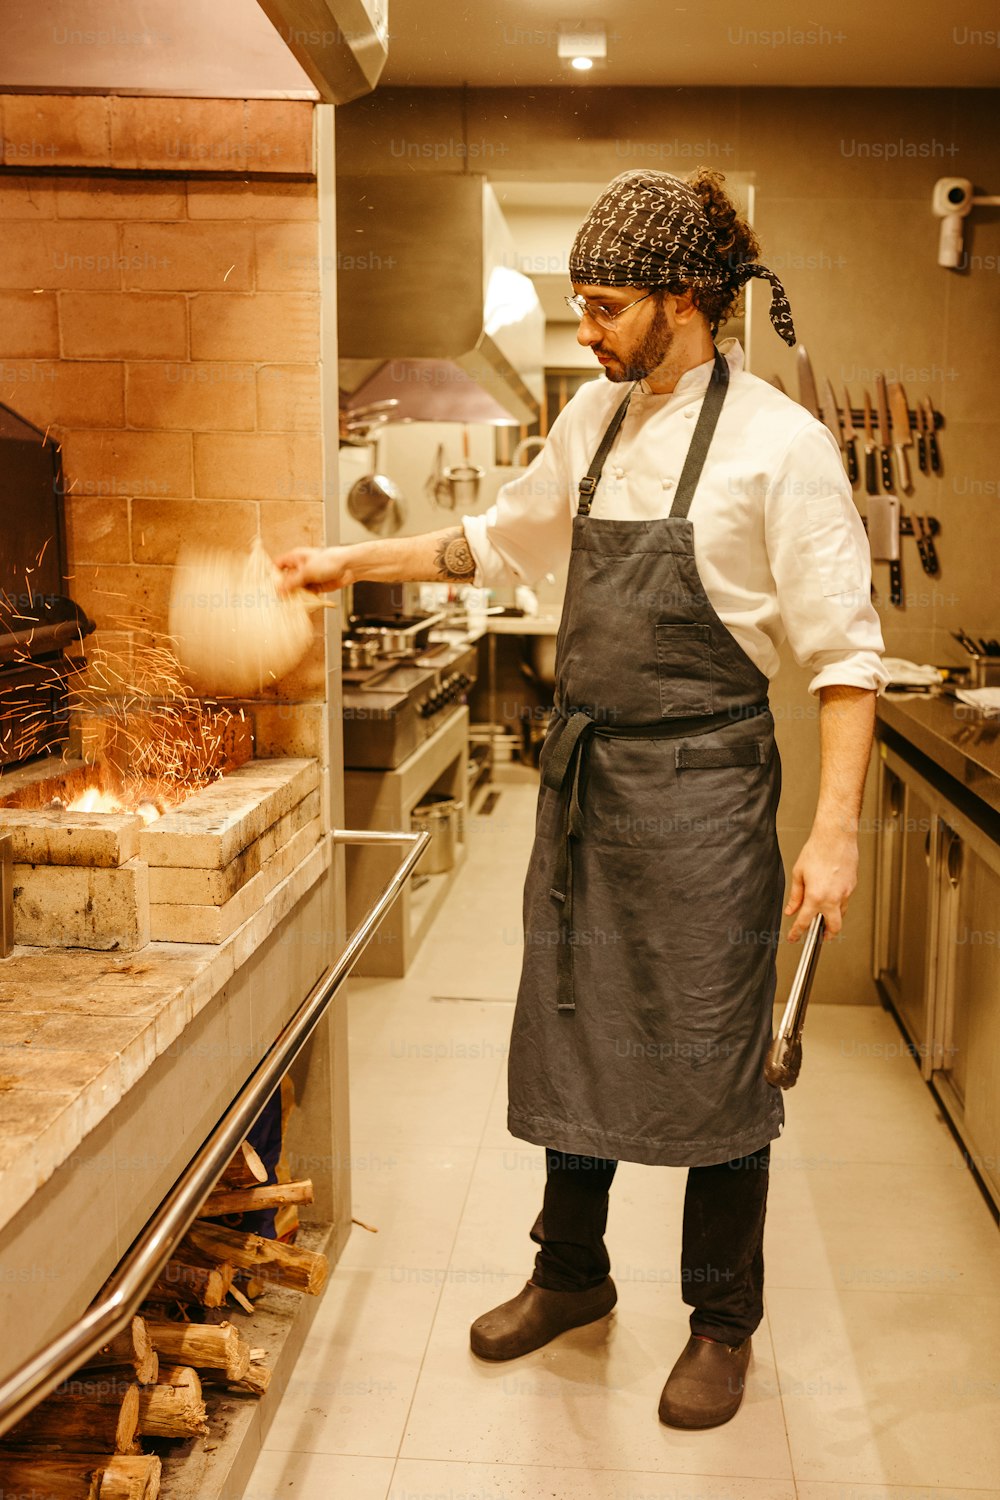 Un uomo in grembiule sta cucinando in una cucina